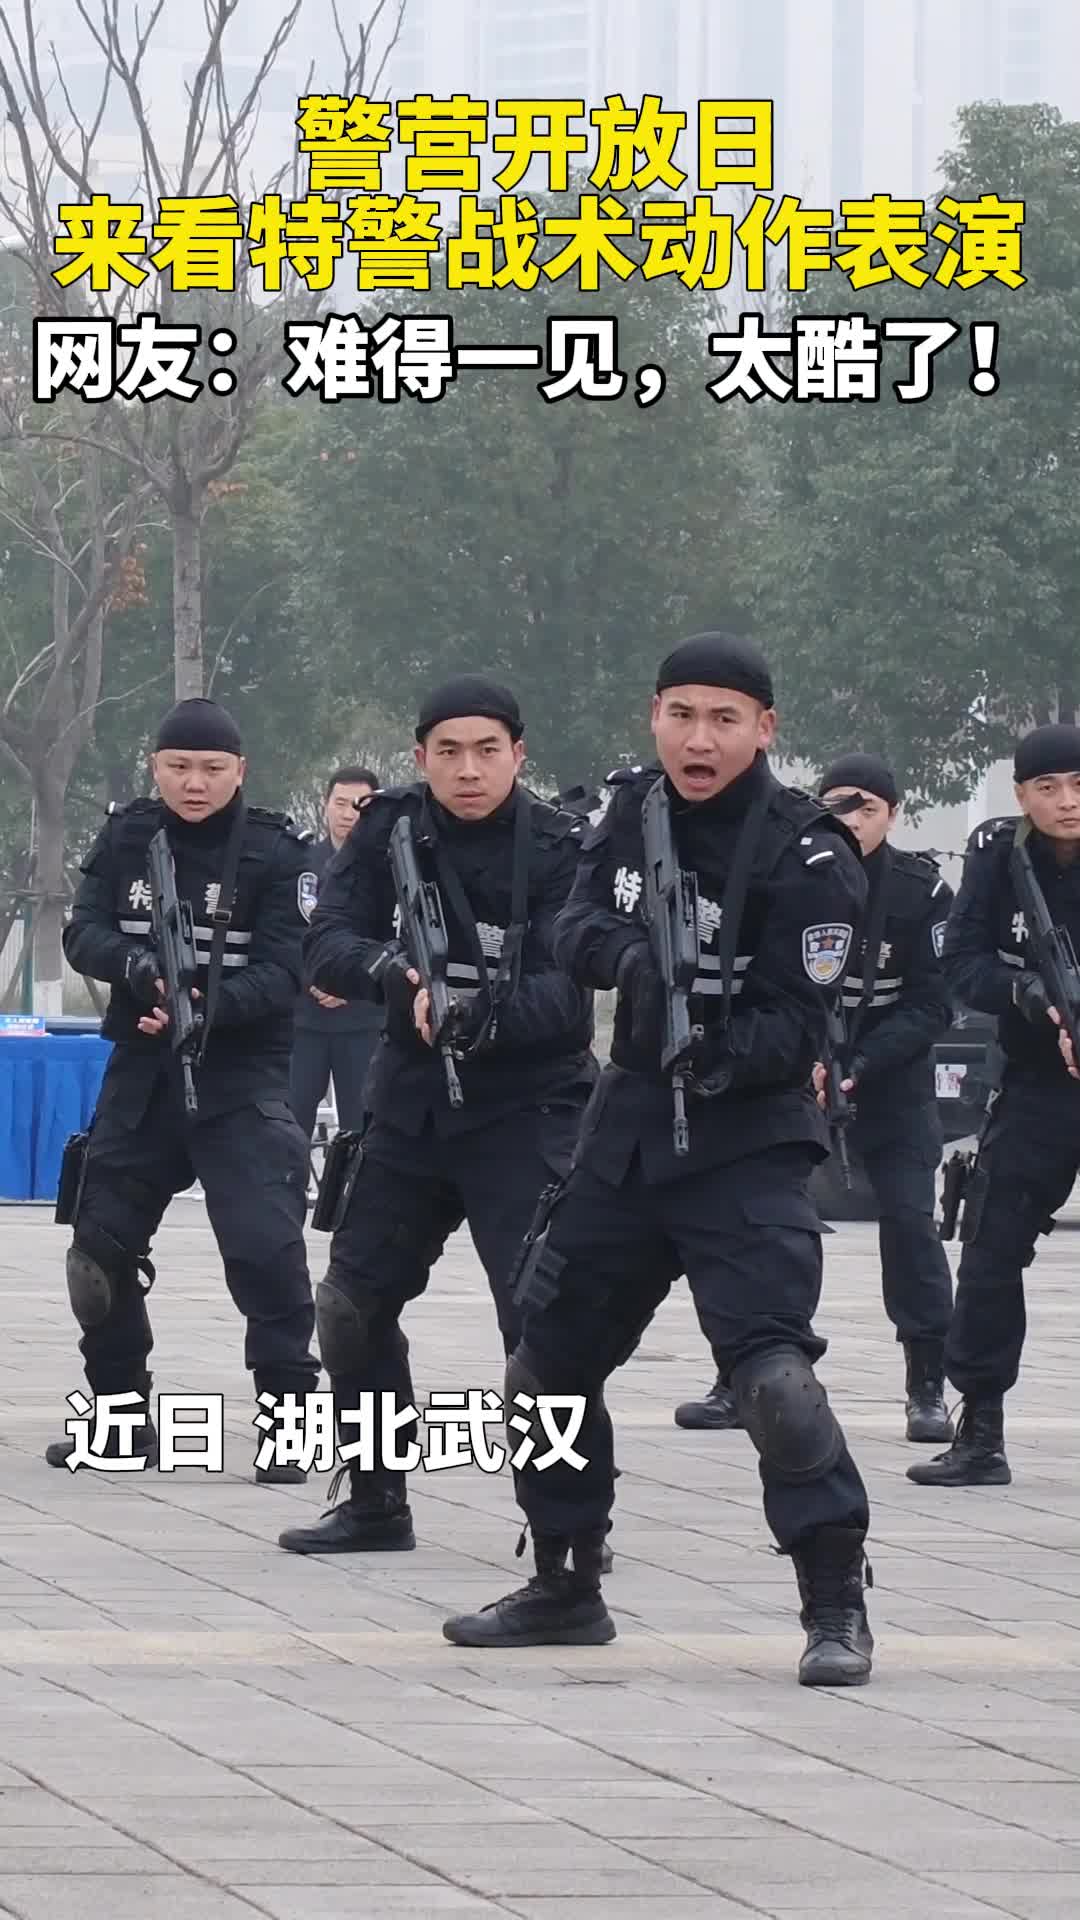 武汉:警营开放日 来看特警战术动作表演